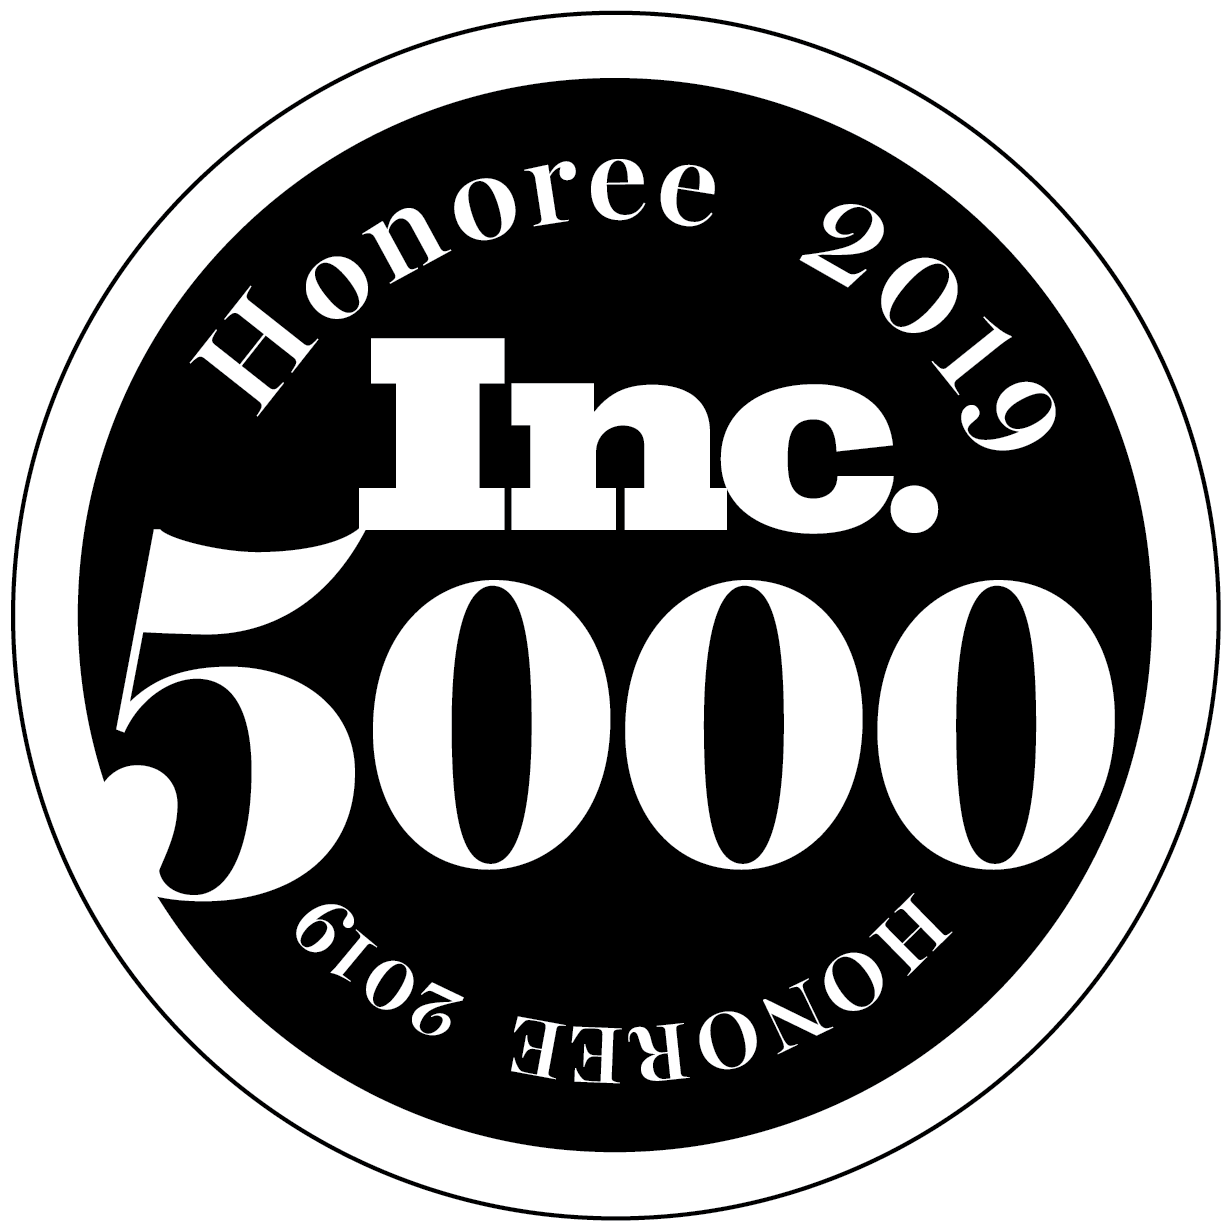 Inc. 5000 Honoree 2019